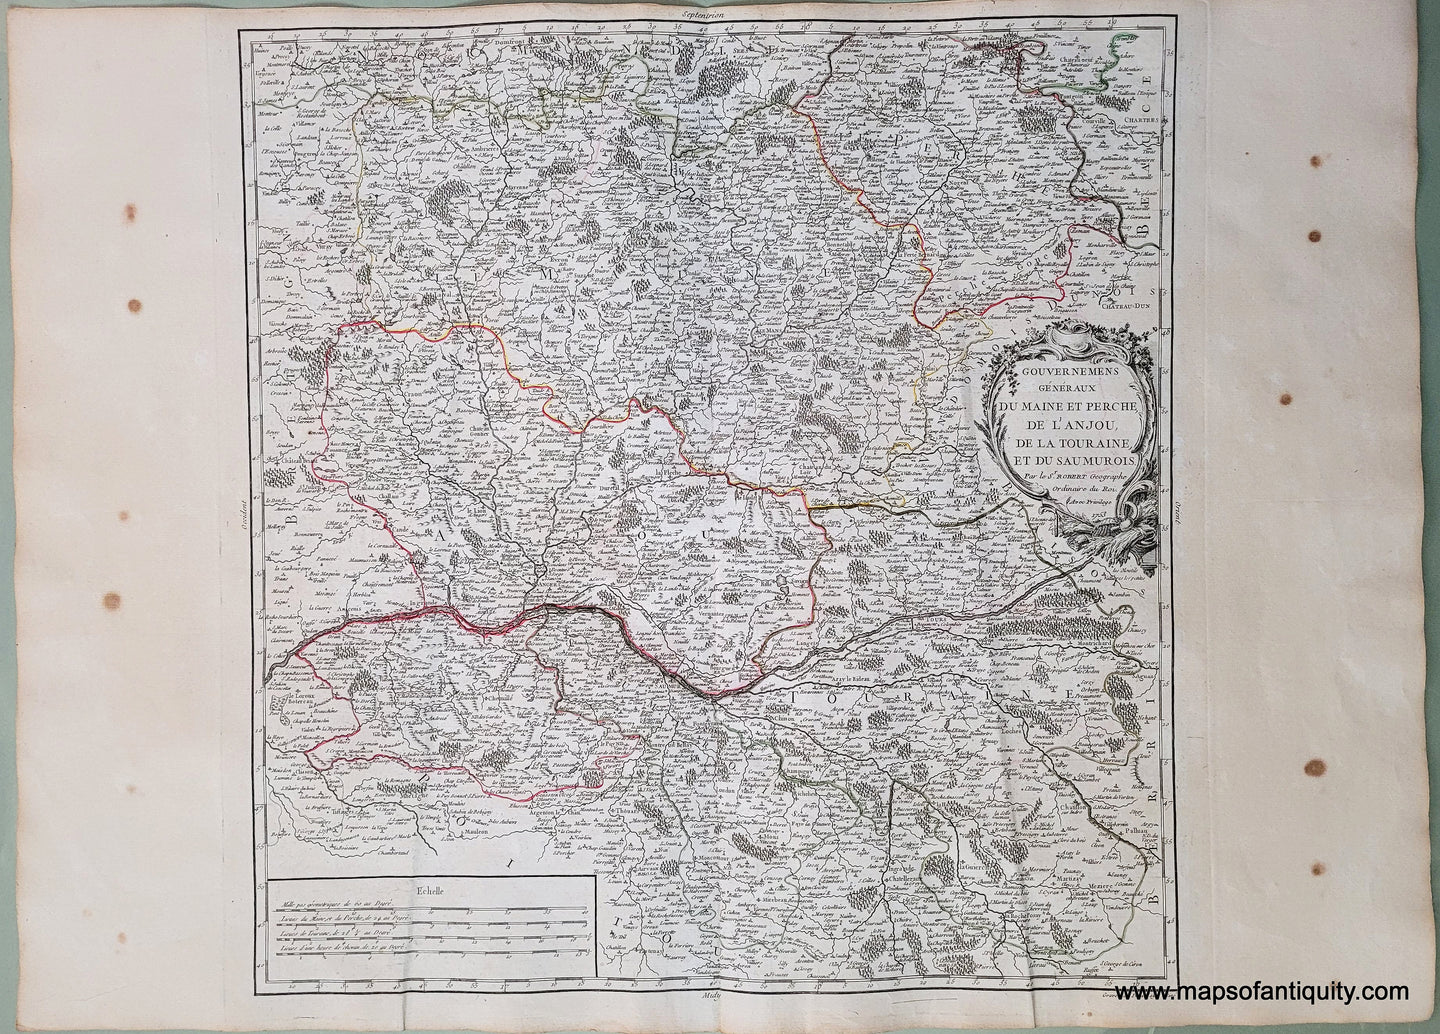 Antique-Hand-Colored-Map-Gouvernemens-Generaux-du-Maine-et-Perche-de-L'Anjou-de-la-Touraine-et-du-Saumurois-Europe-France-1753-Robert-Vaugondy-Maps-Of-Antiquity